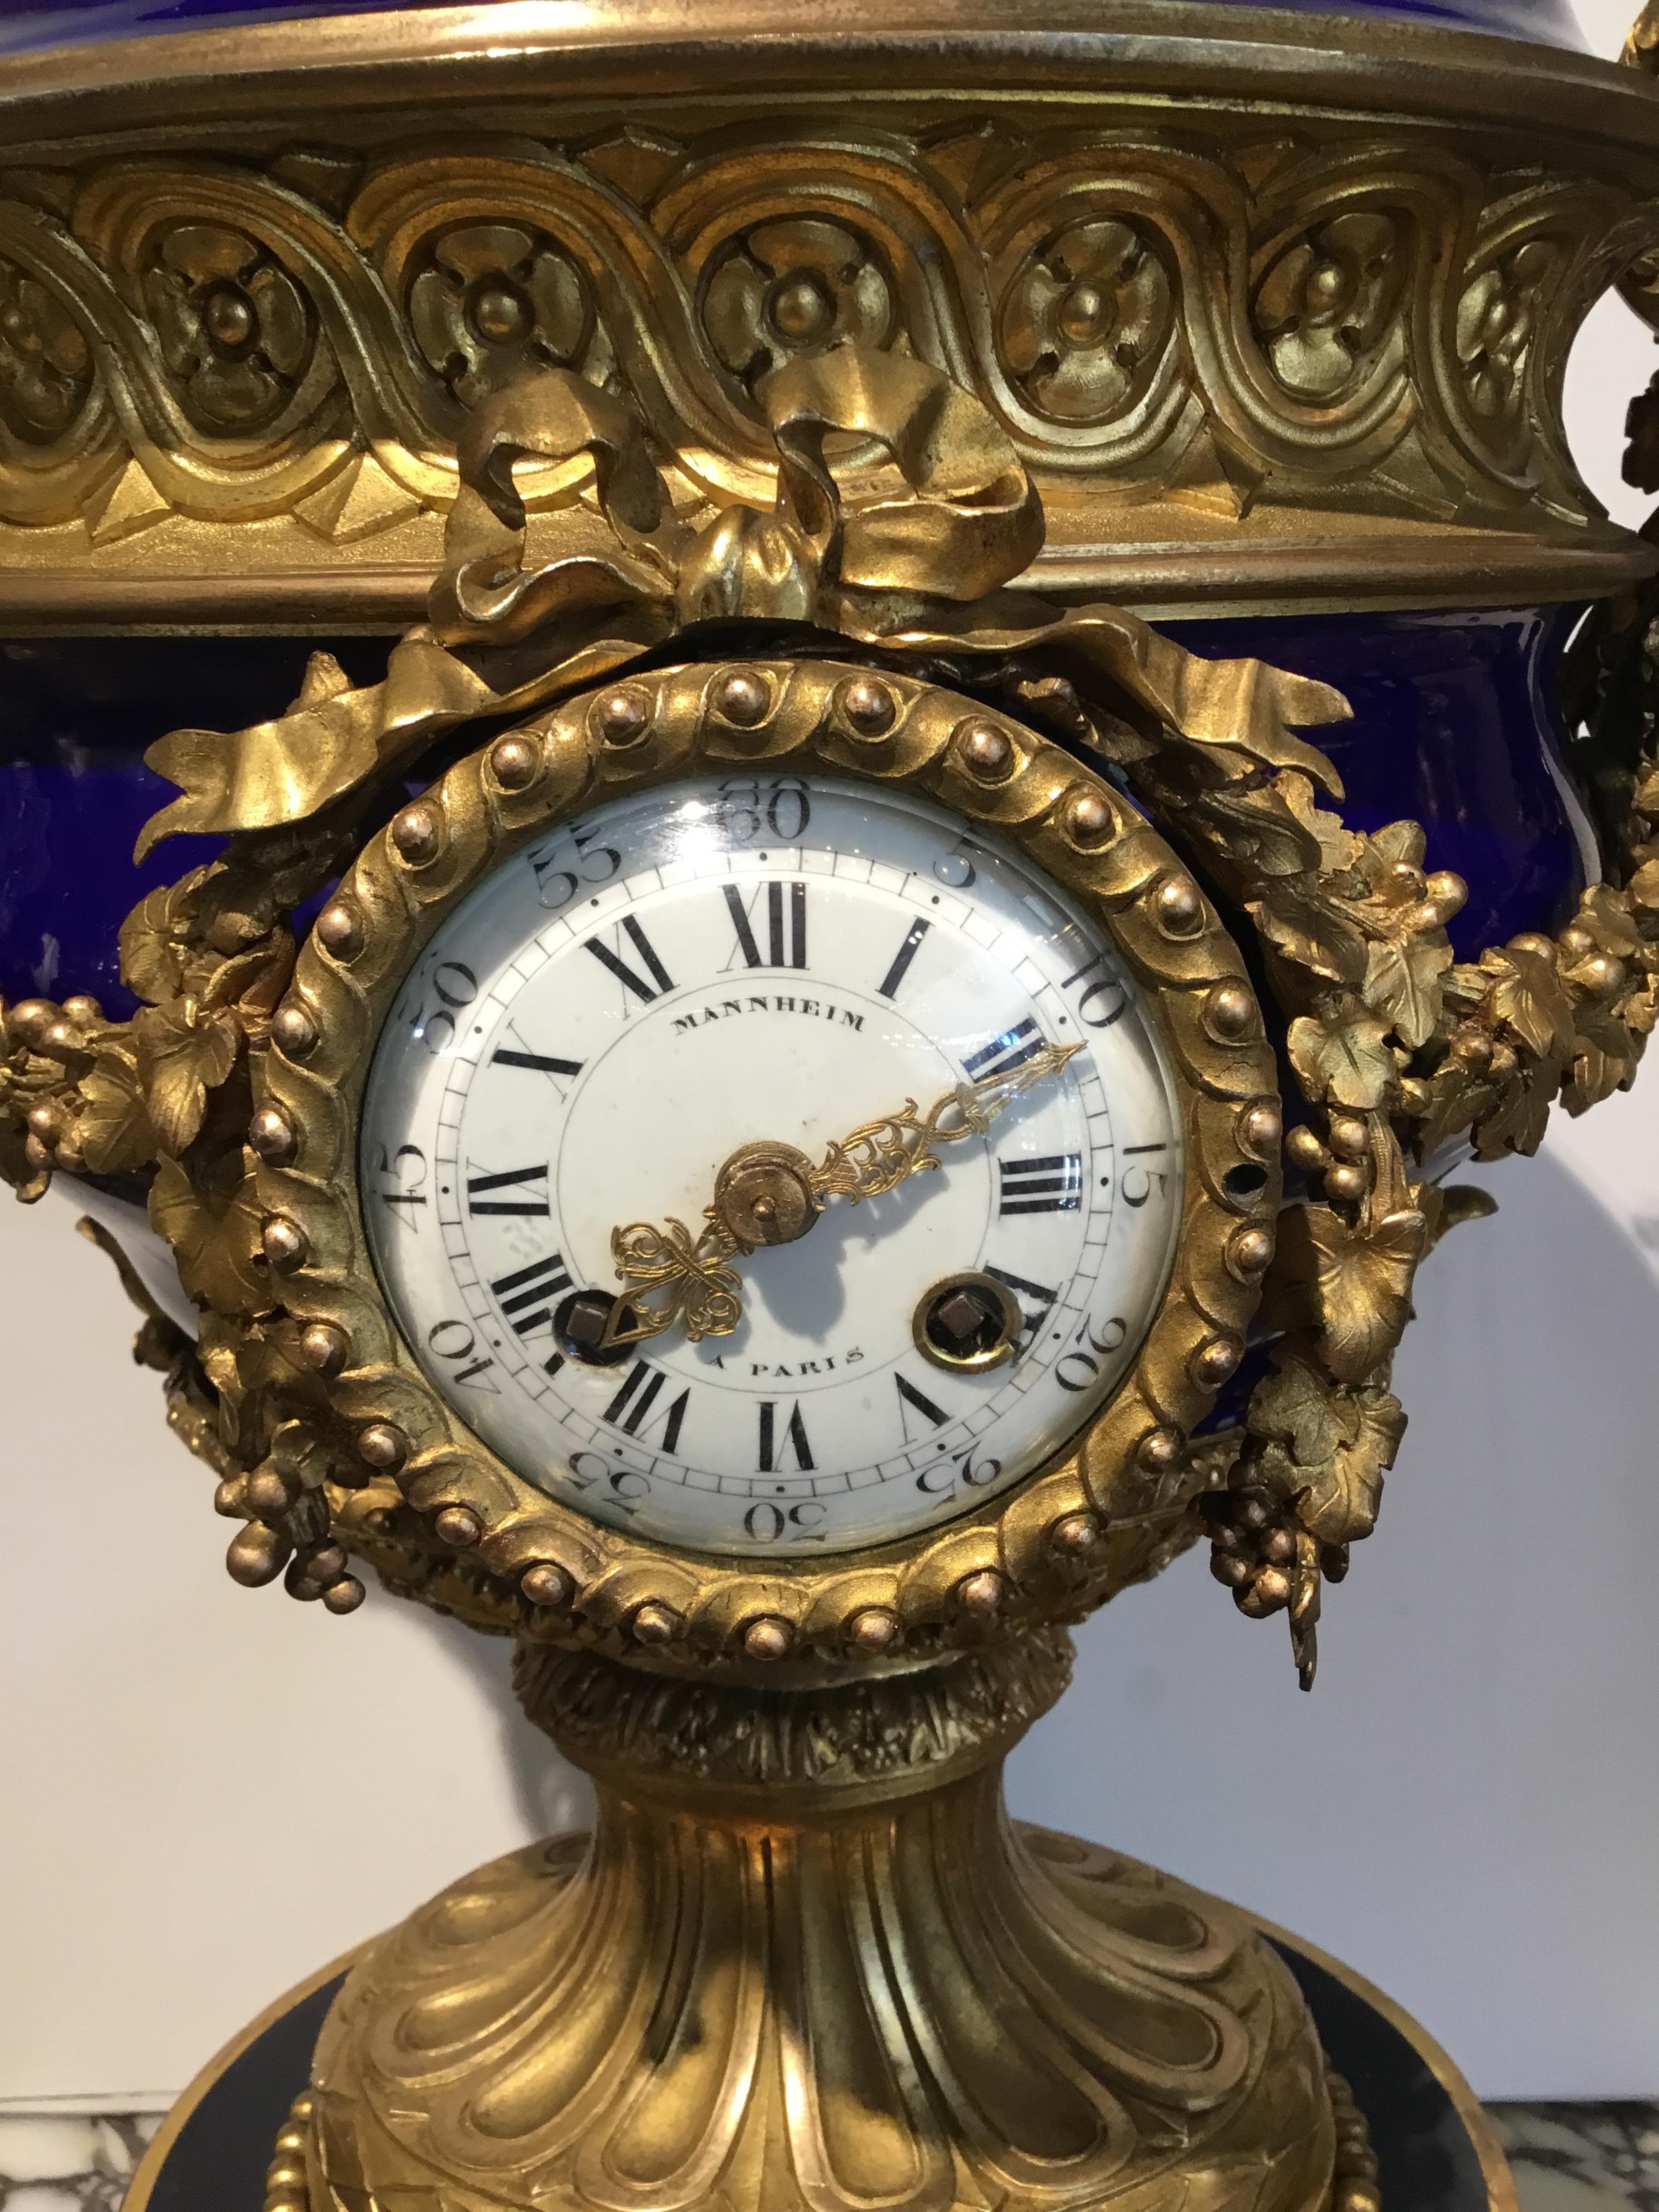 Grande et exquise horloge en forme d'urne en porcelaine de cobalt et bronze doré
Montures. Signé au recto Mannheim Paris. Épi de faîtage en forme de grenade sur le cimier.
Les bras défilants de chaque côté sont ornés de feuilles de vigne. L'urne